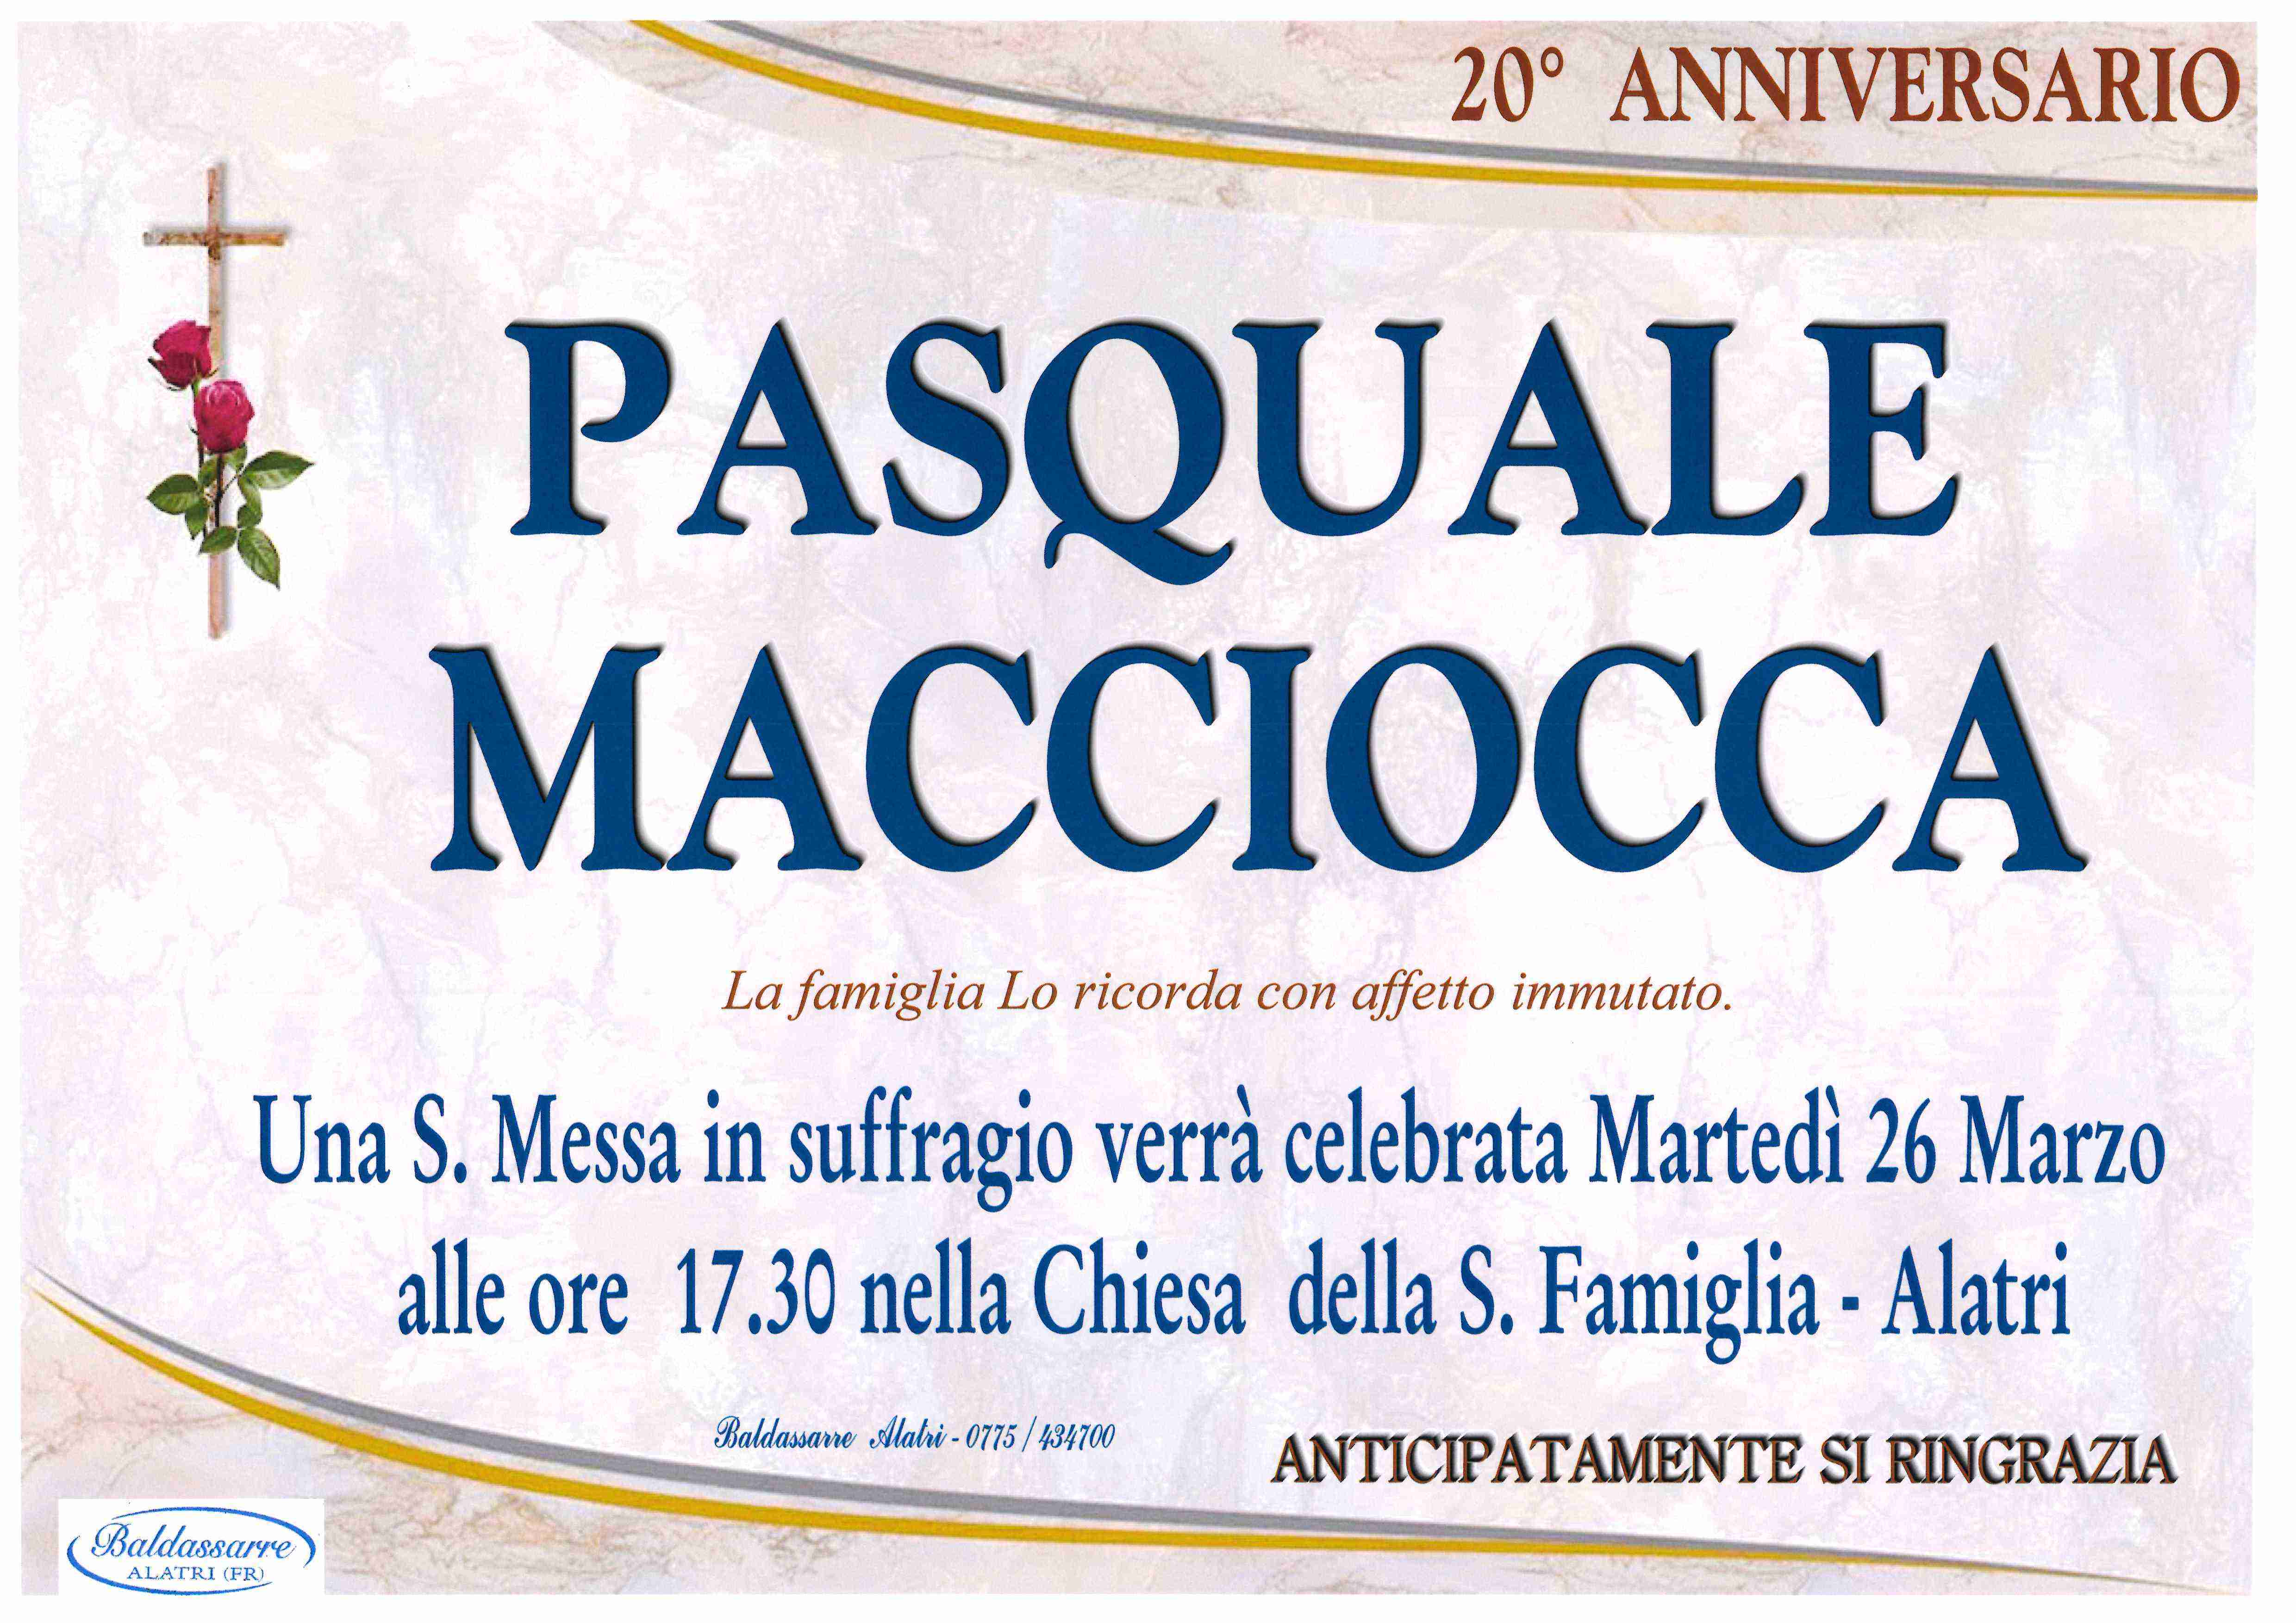 Pasquale  Macciocca